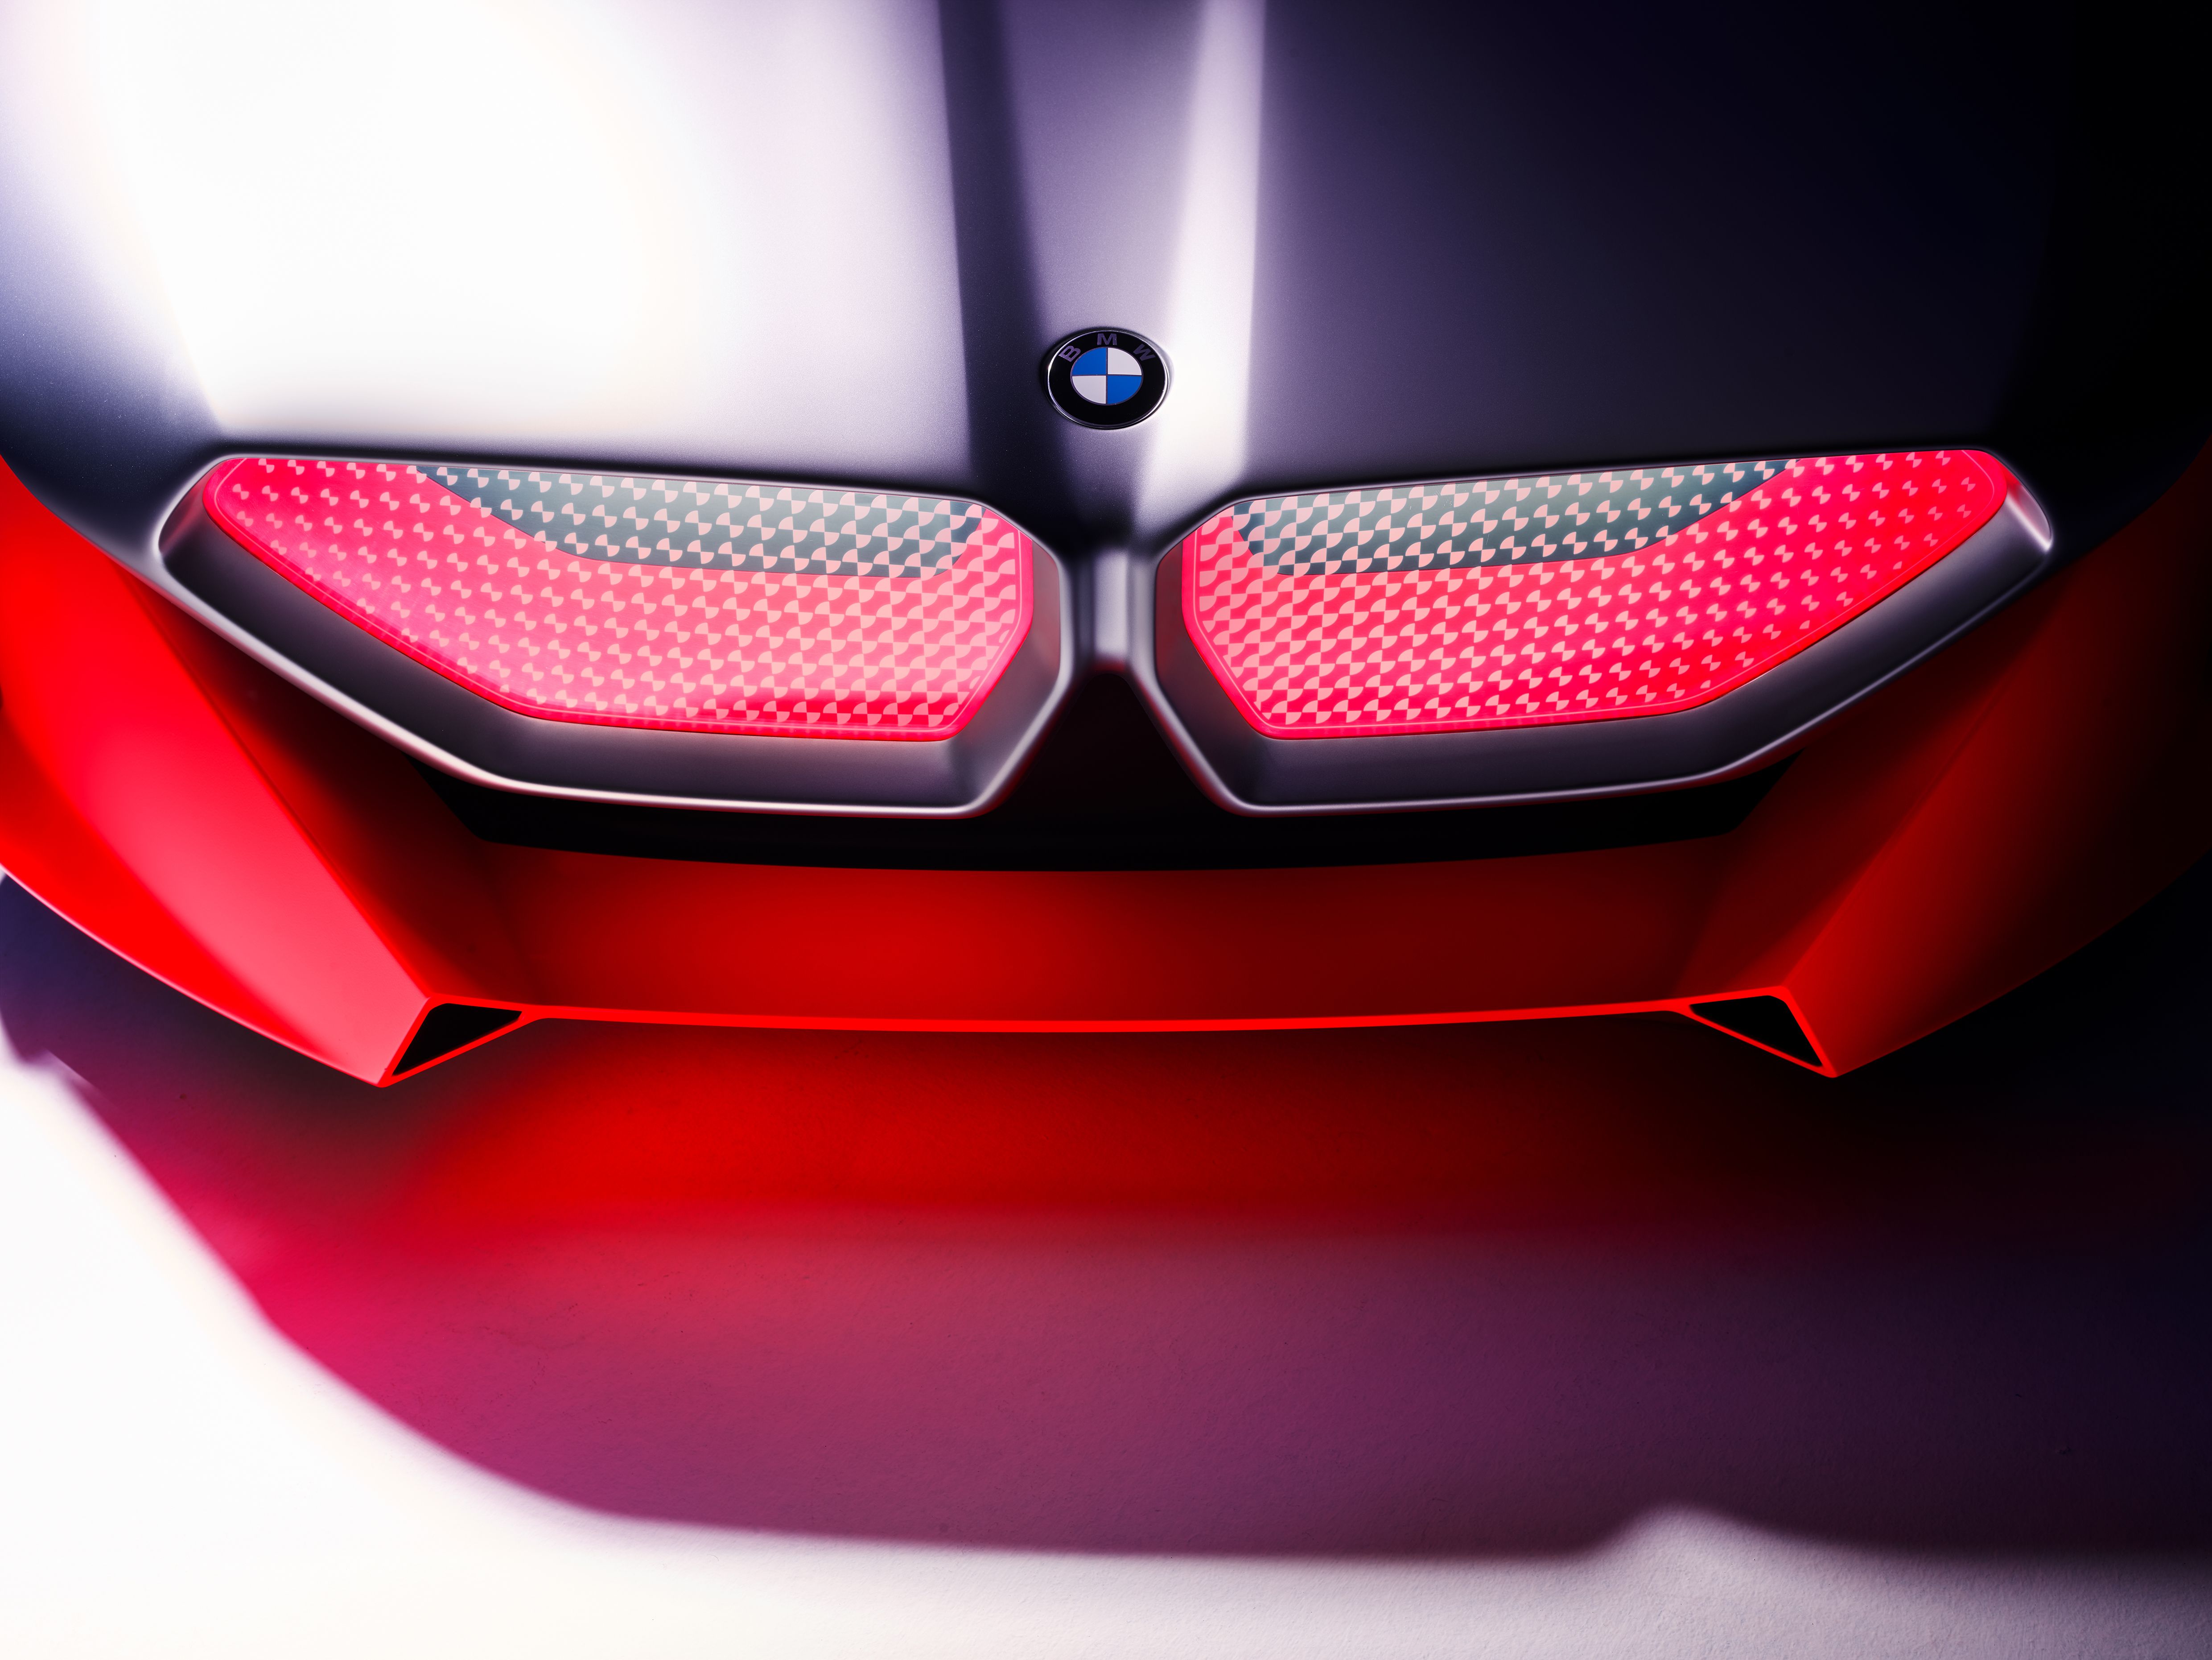 2019 BMW Vision M Next Concept